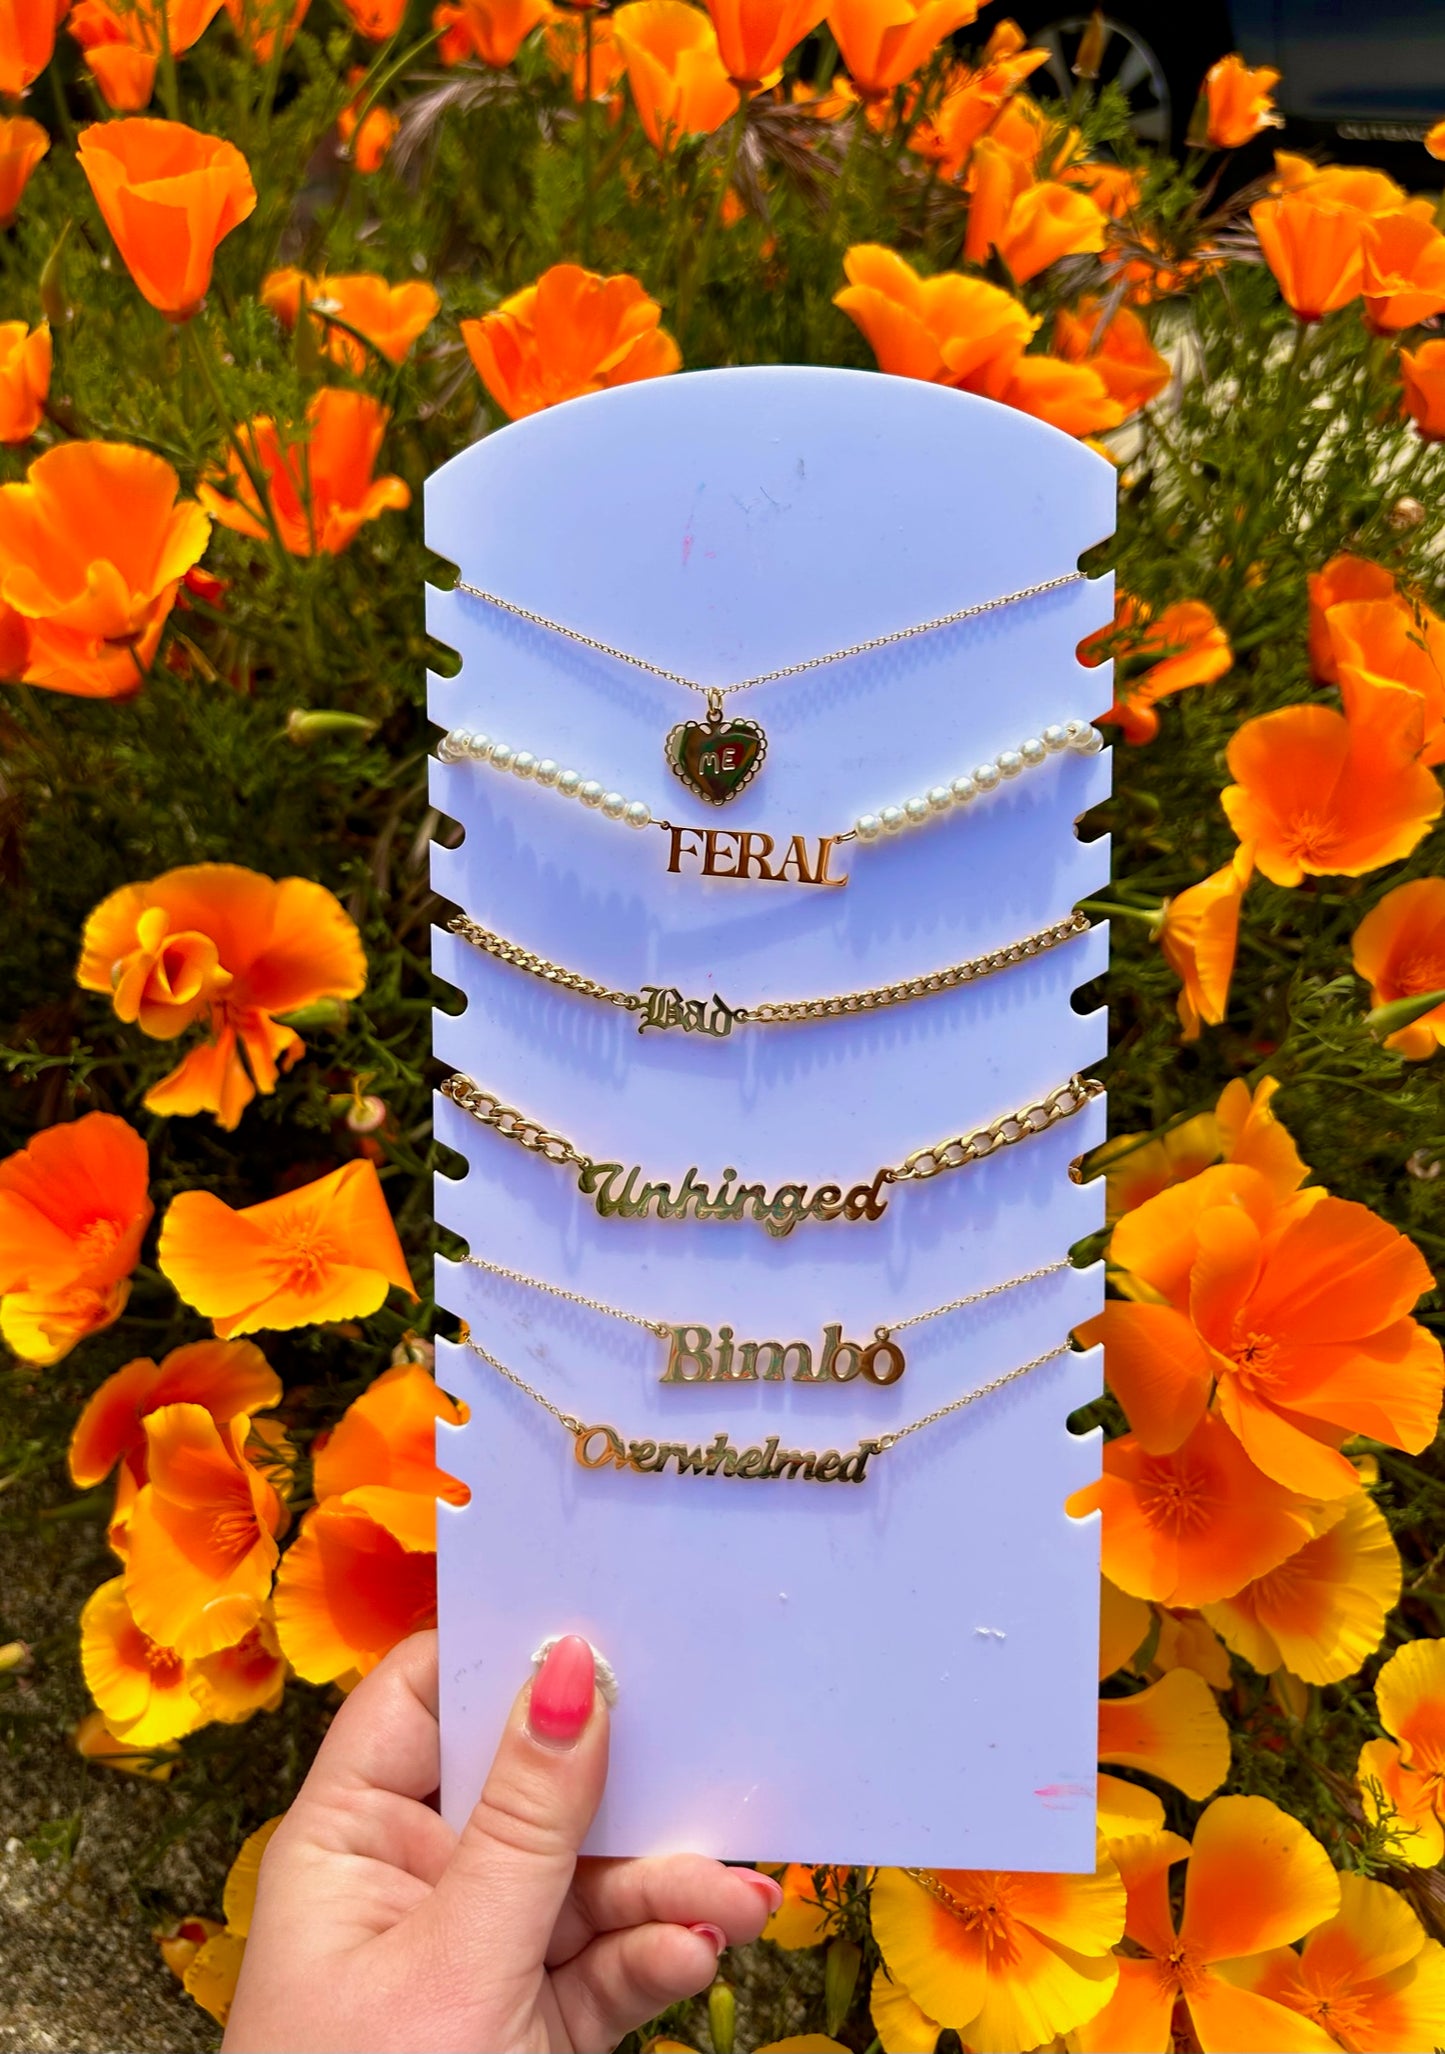 Bimbo Nameplate Necklace